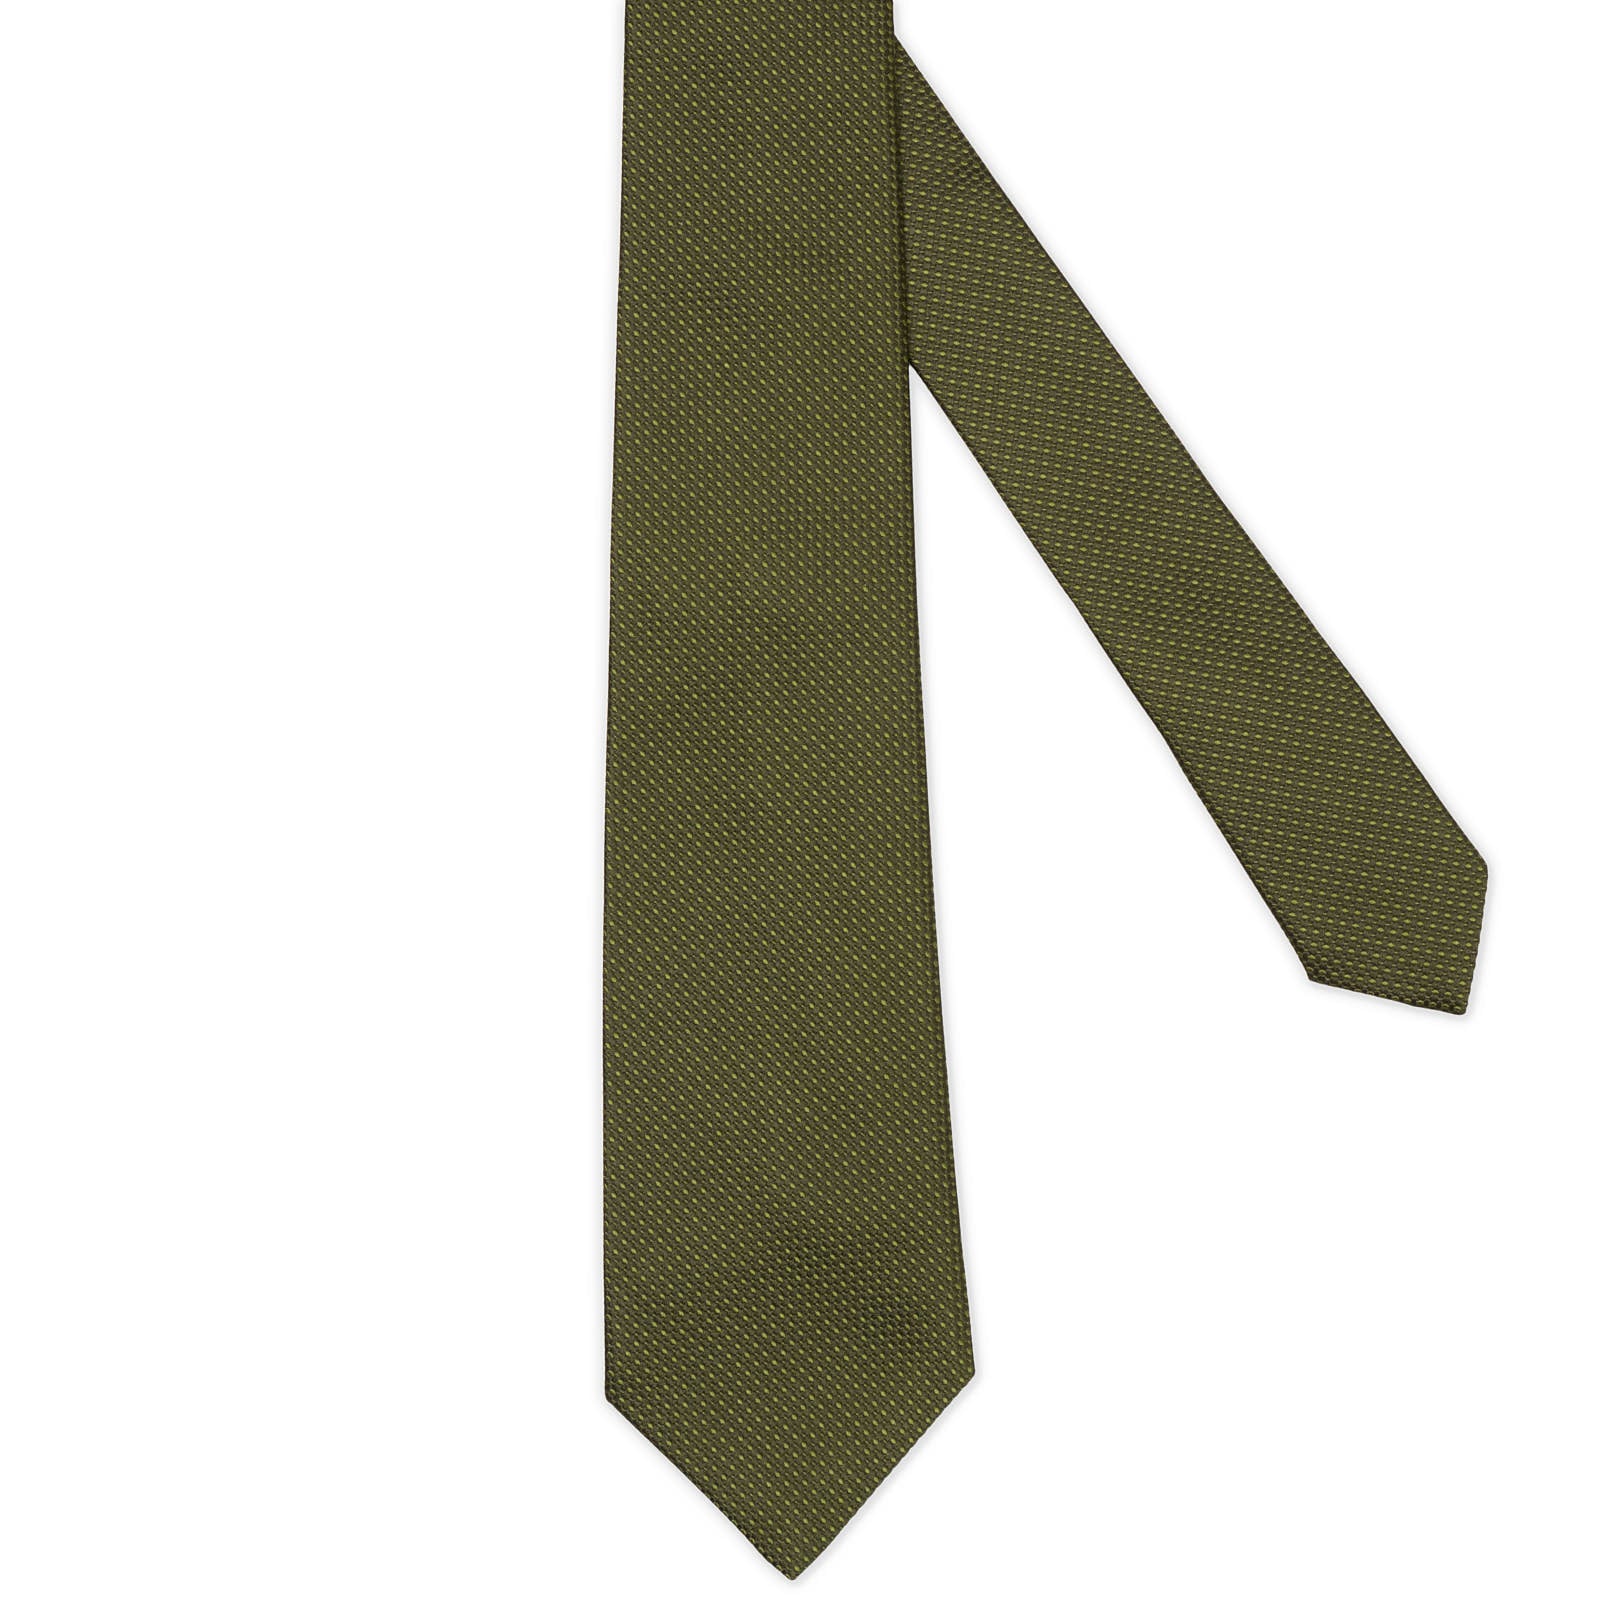 MATTABISCH FOR VANNUCCI Olive Green Silk Tie NEW